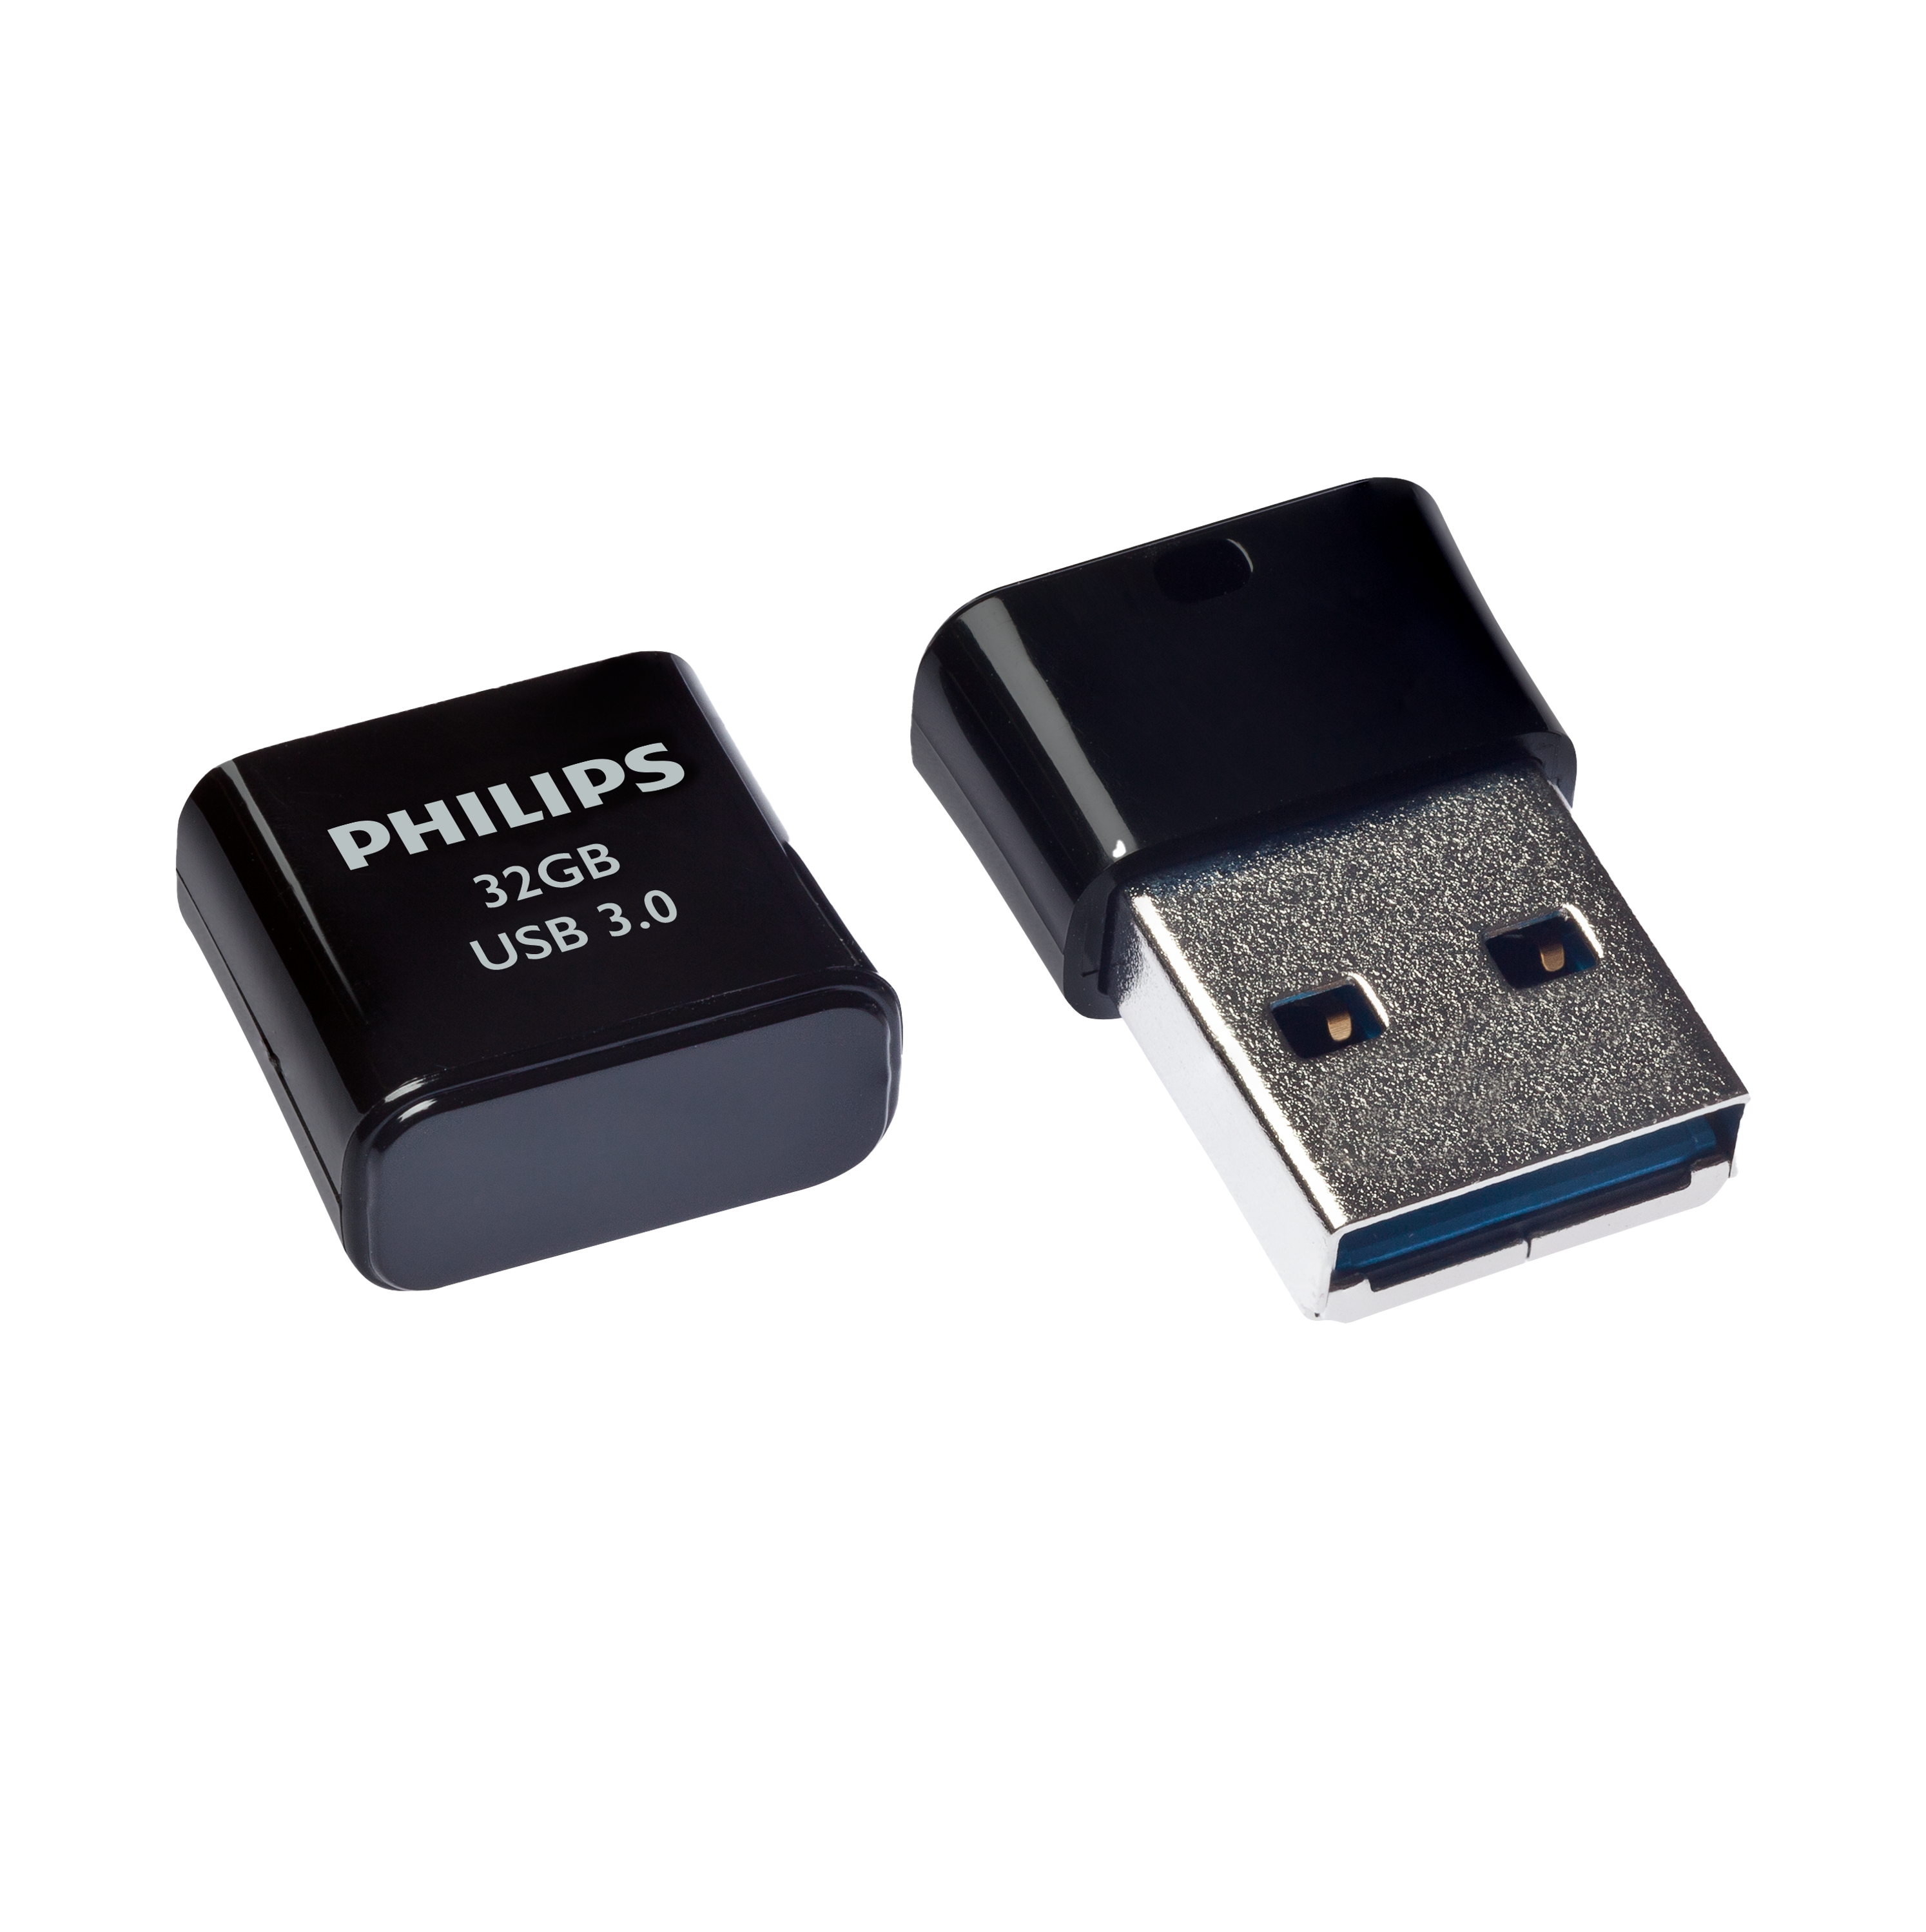 USB-Stick Pico Stick 32GB, 100MB/s Edition, 32 PHILIPS USB GB) (Schwarz,